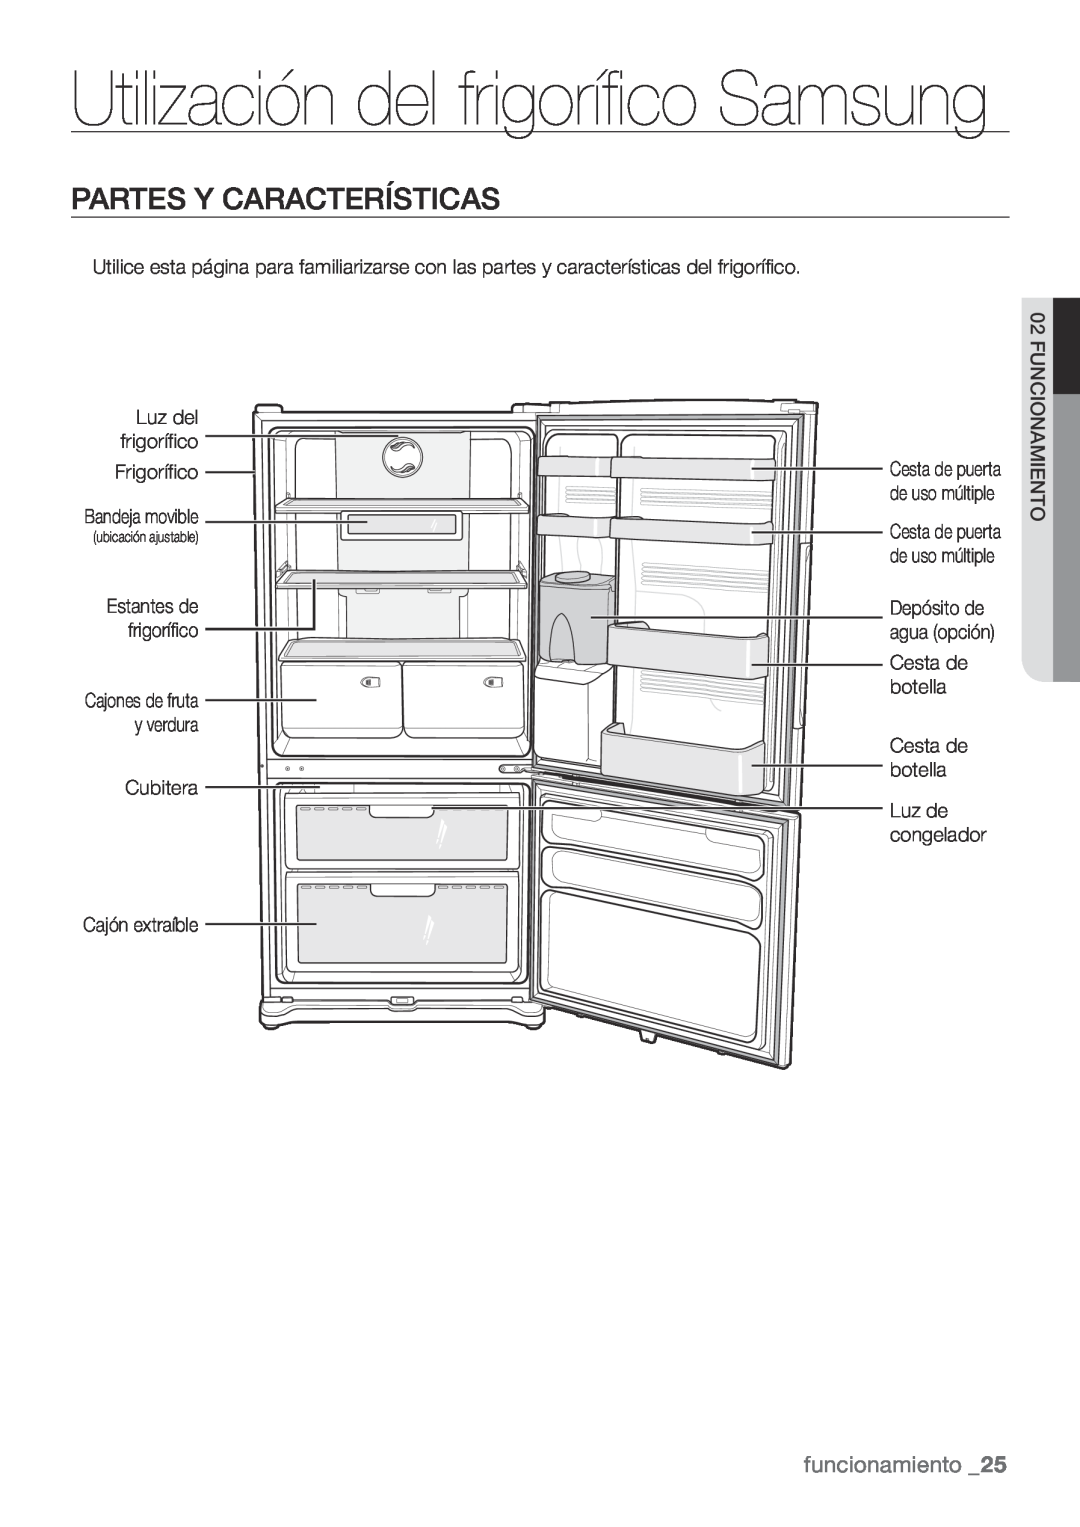 Samsung RL62ZBSH1/XES, RL67VCSH1/XES manual Utilización del frigorífico Samsung, Partes Y Características, funcionamiento 